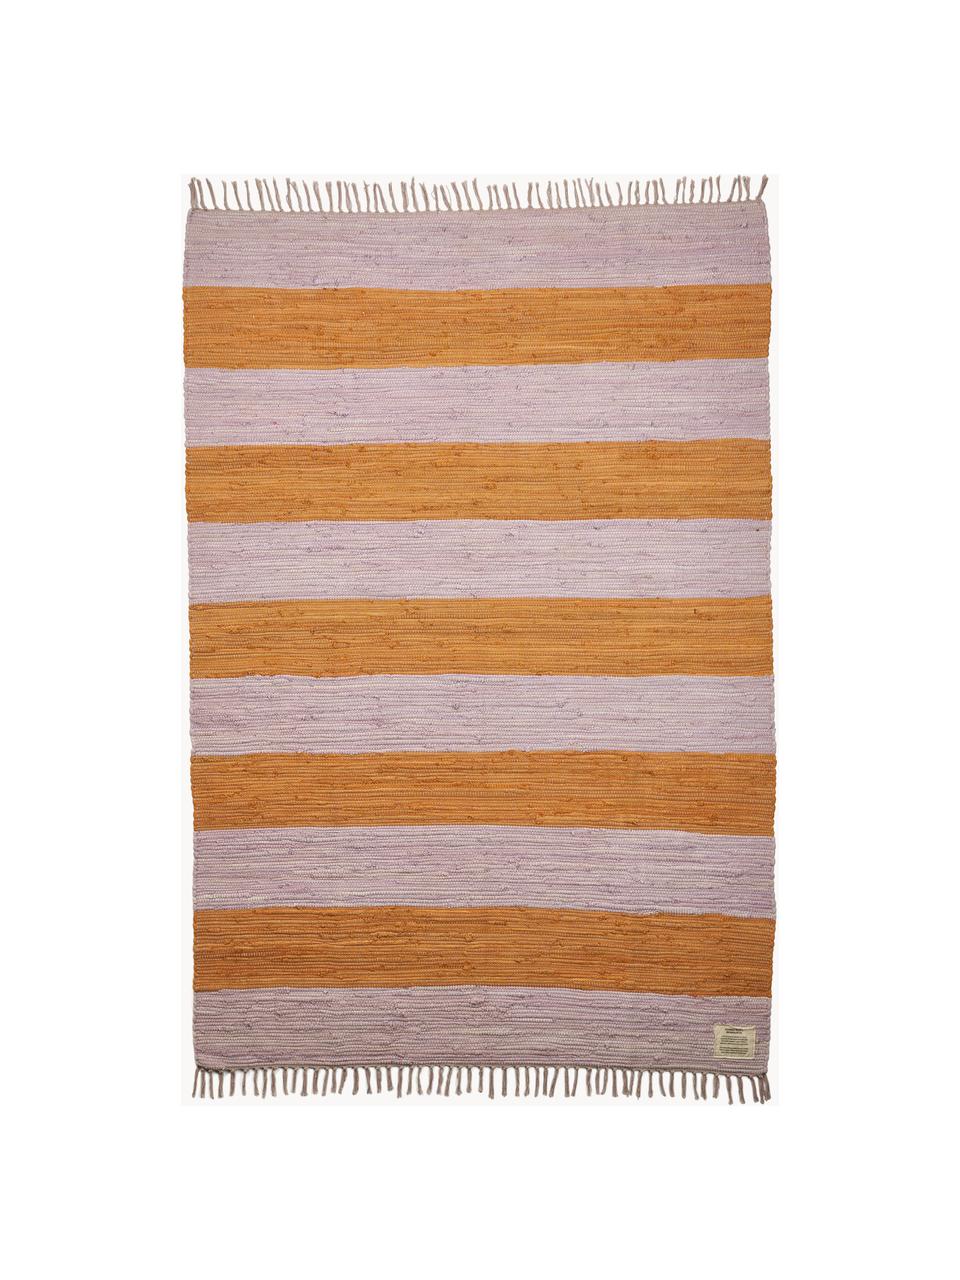 Tappeto in cotone tessuto a mano con frange Chindi, 100% cotone, Lavanda, arancione, Larg. 60 x Lung. 90 cm